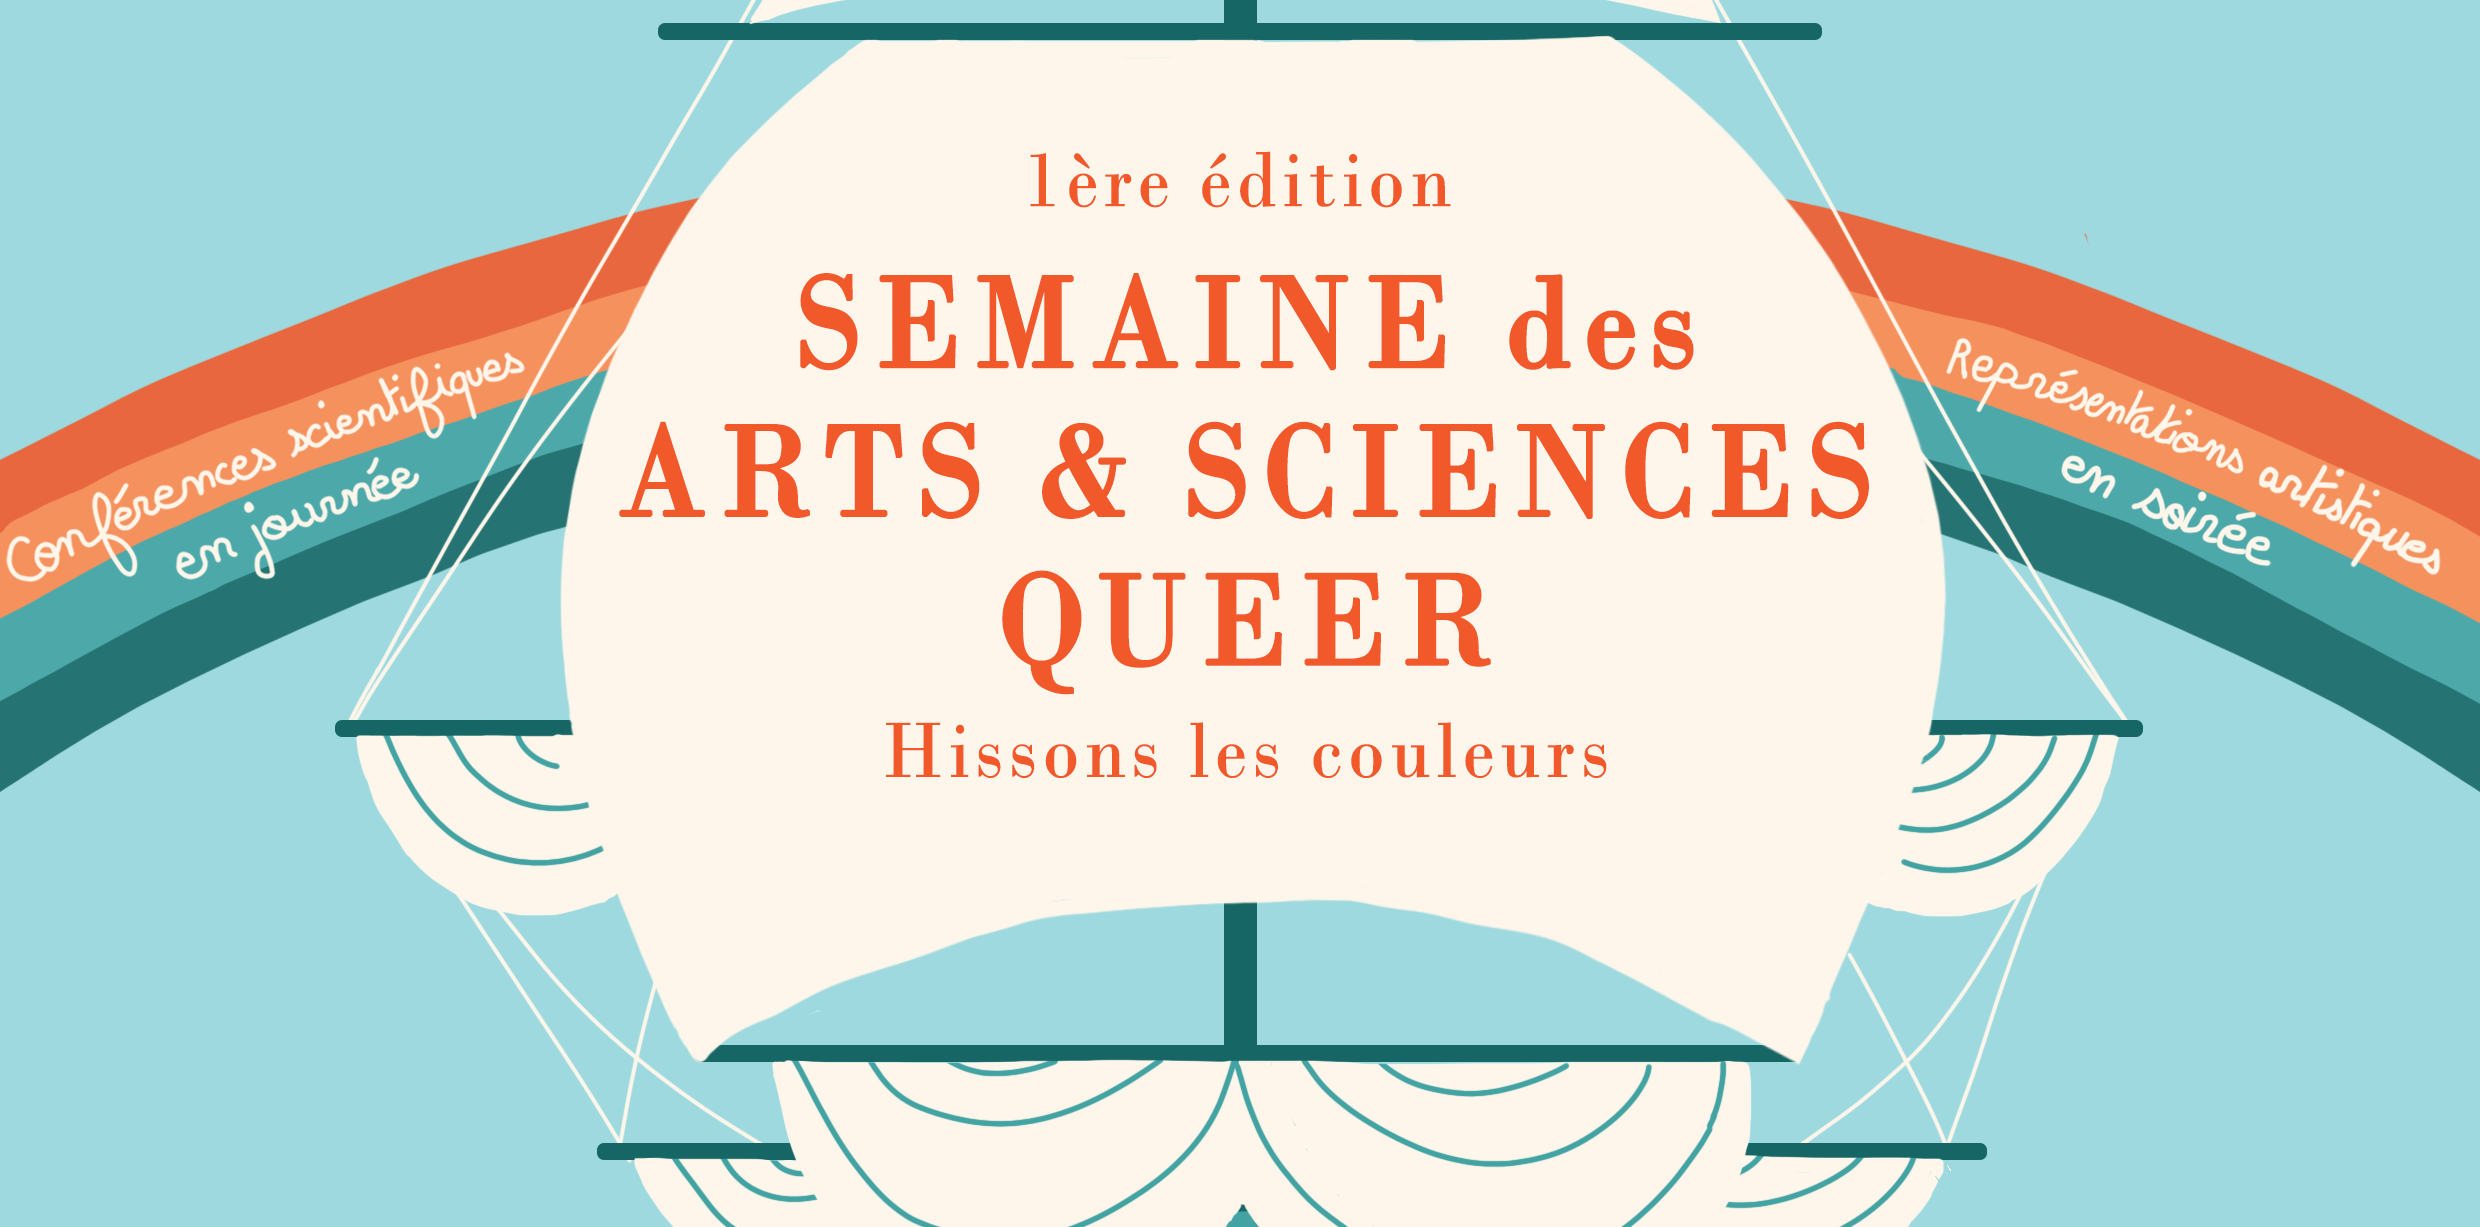 « Semaine d’arts et sciences queers « Hissons les couleurs » » – INSA Lyon